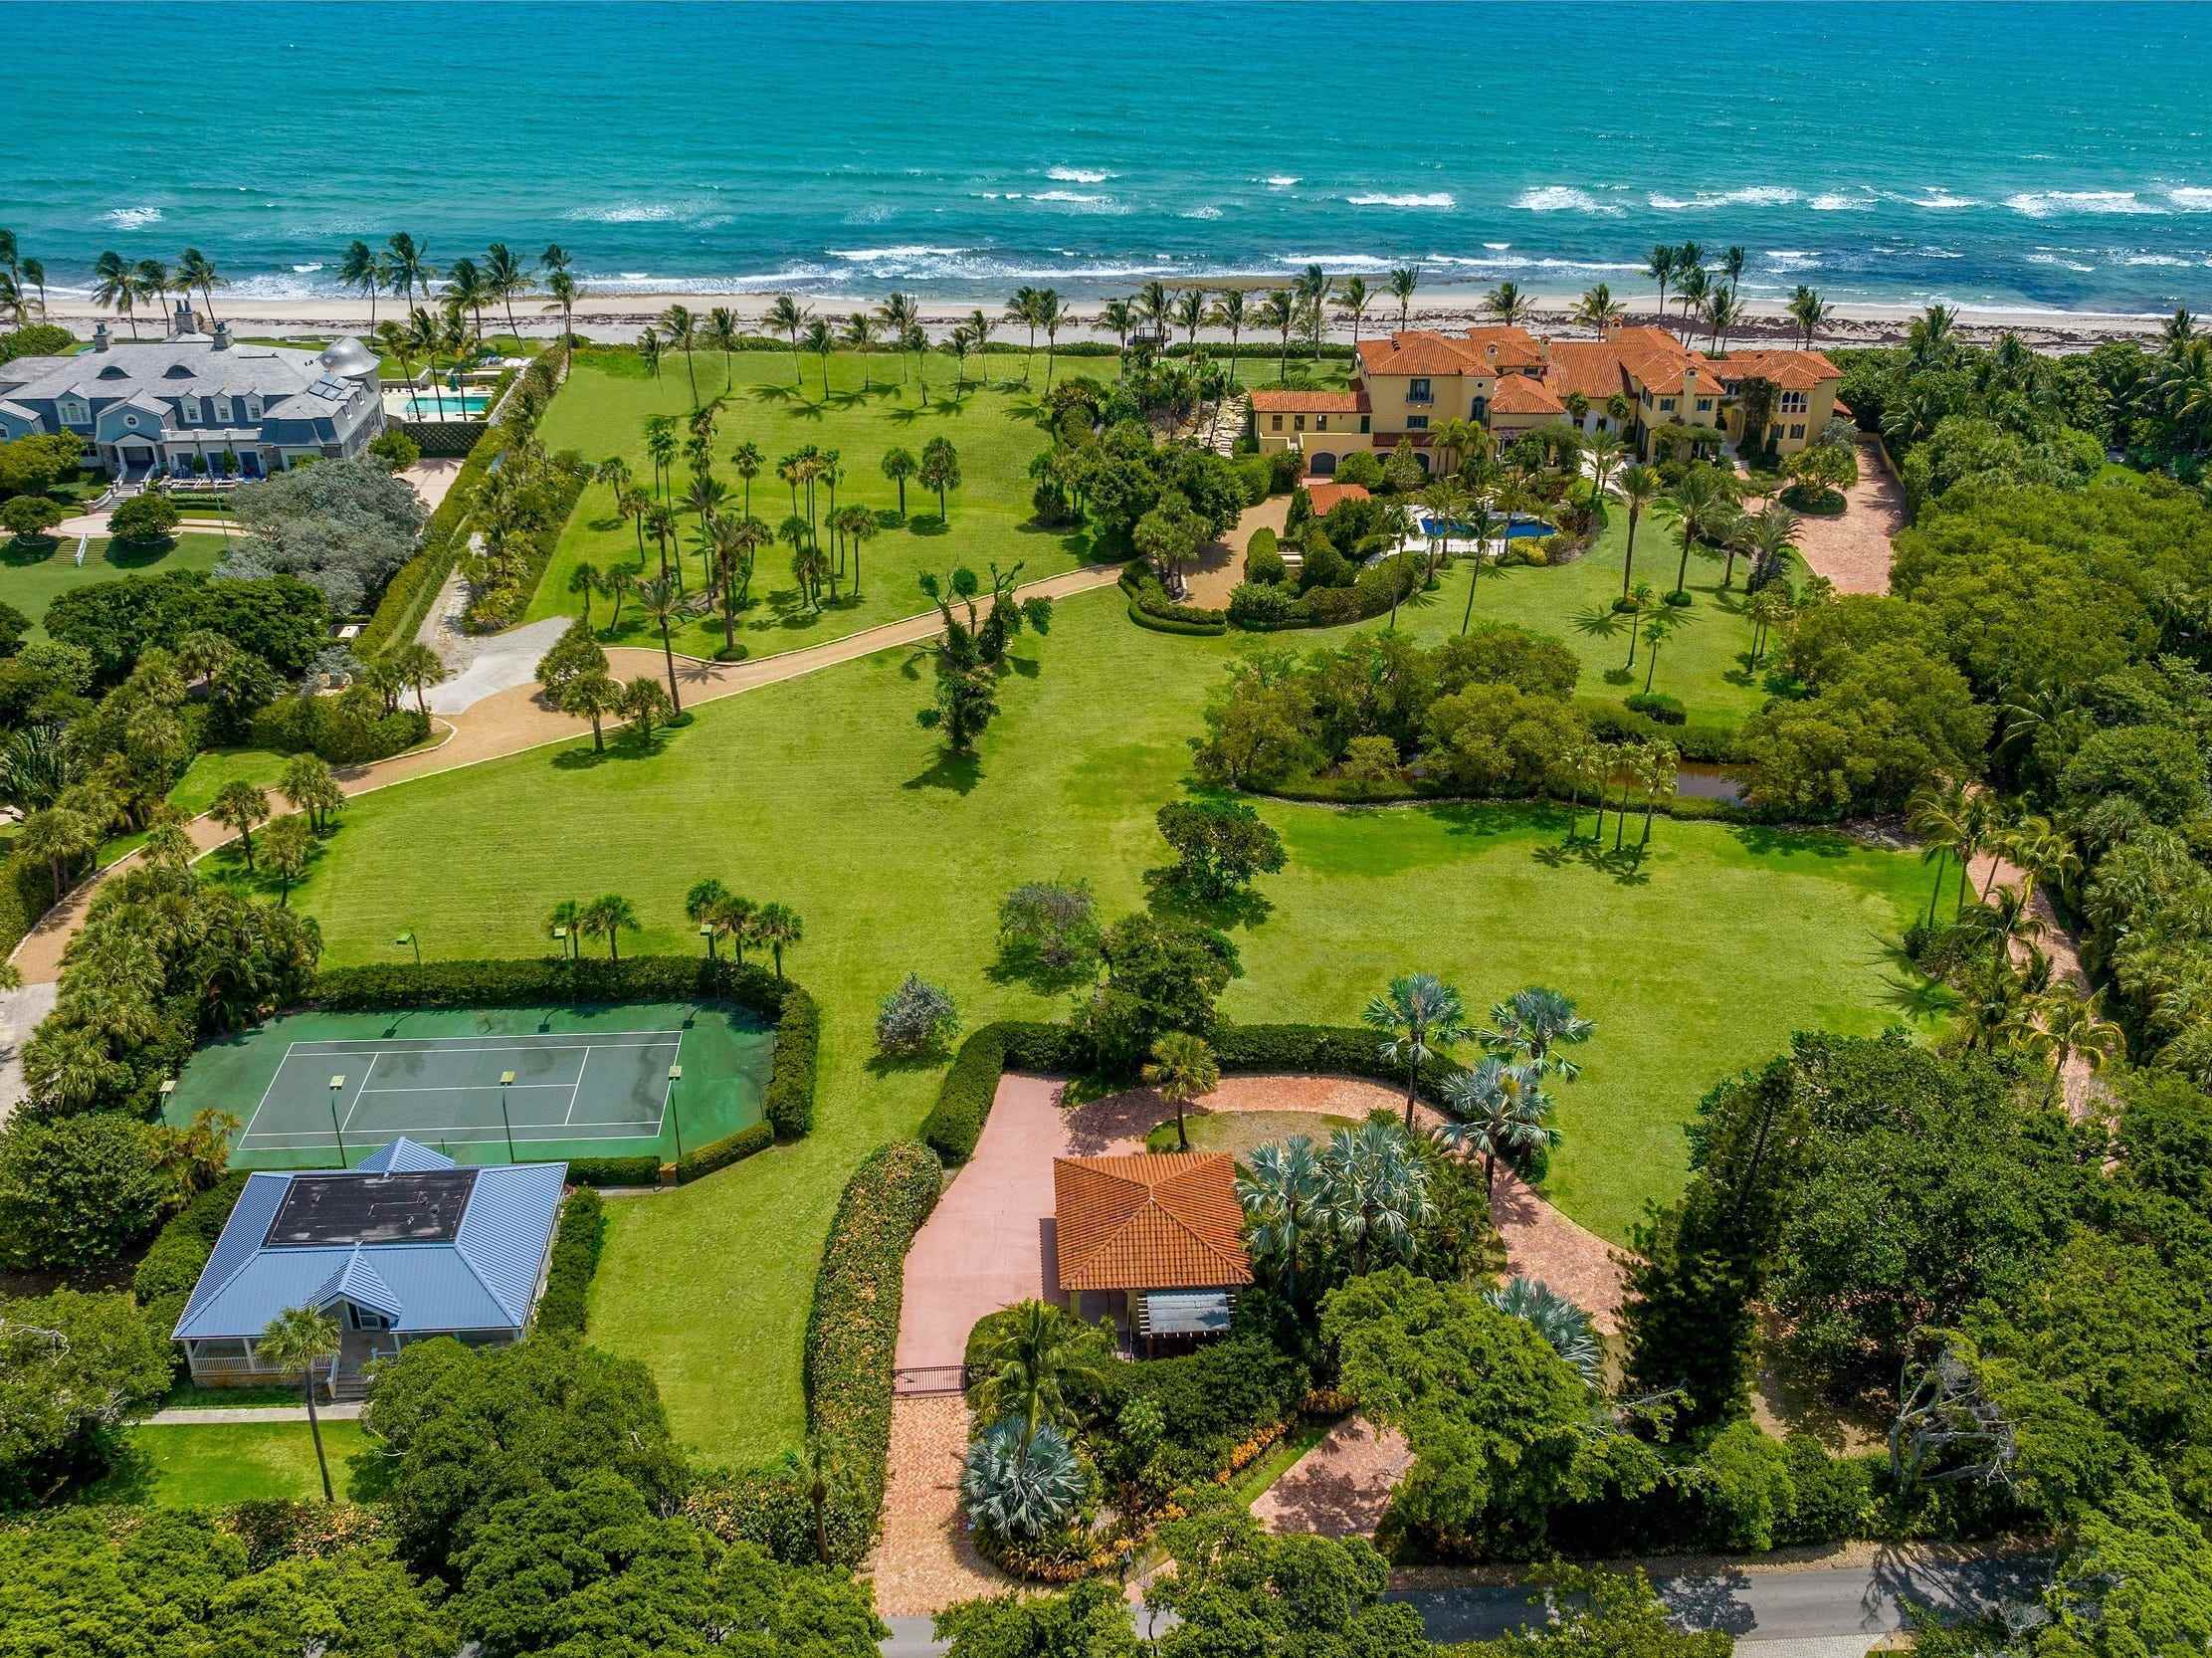 Luftaufnahme des Anwesens von Larry Ellison in Florida mit Herrenhaus, Tennisplatz, Pool und Meer im Blick